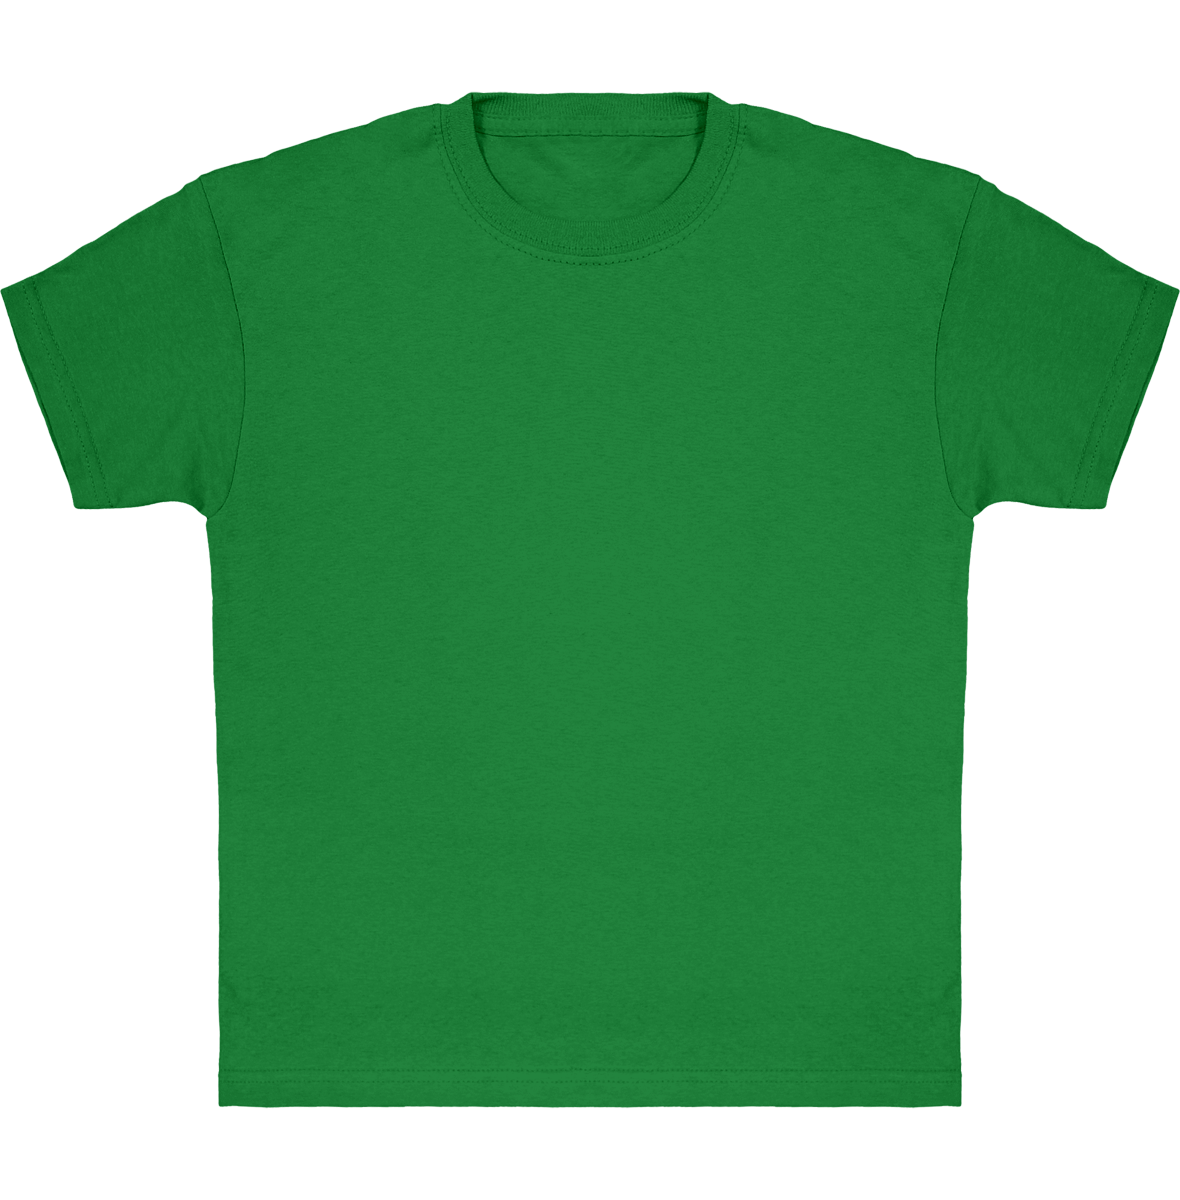 Camiseta Clásica De Niño Personalizada En Algodón 100% Kelly Green